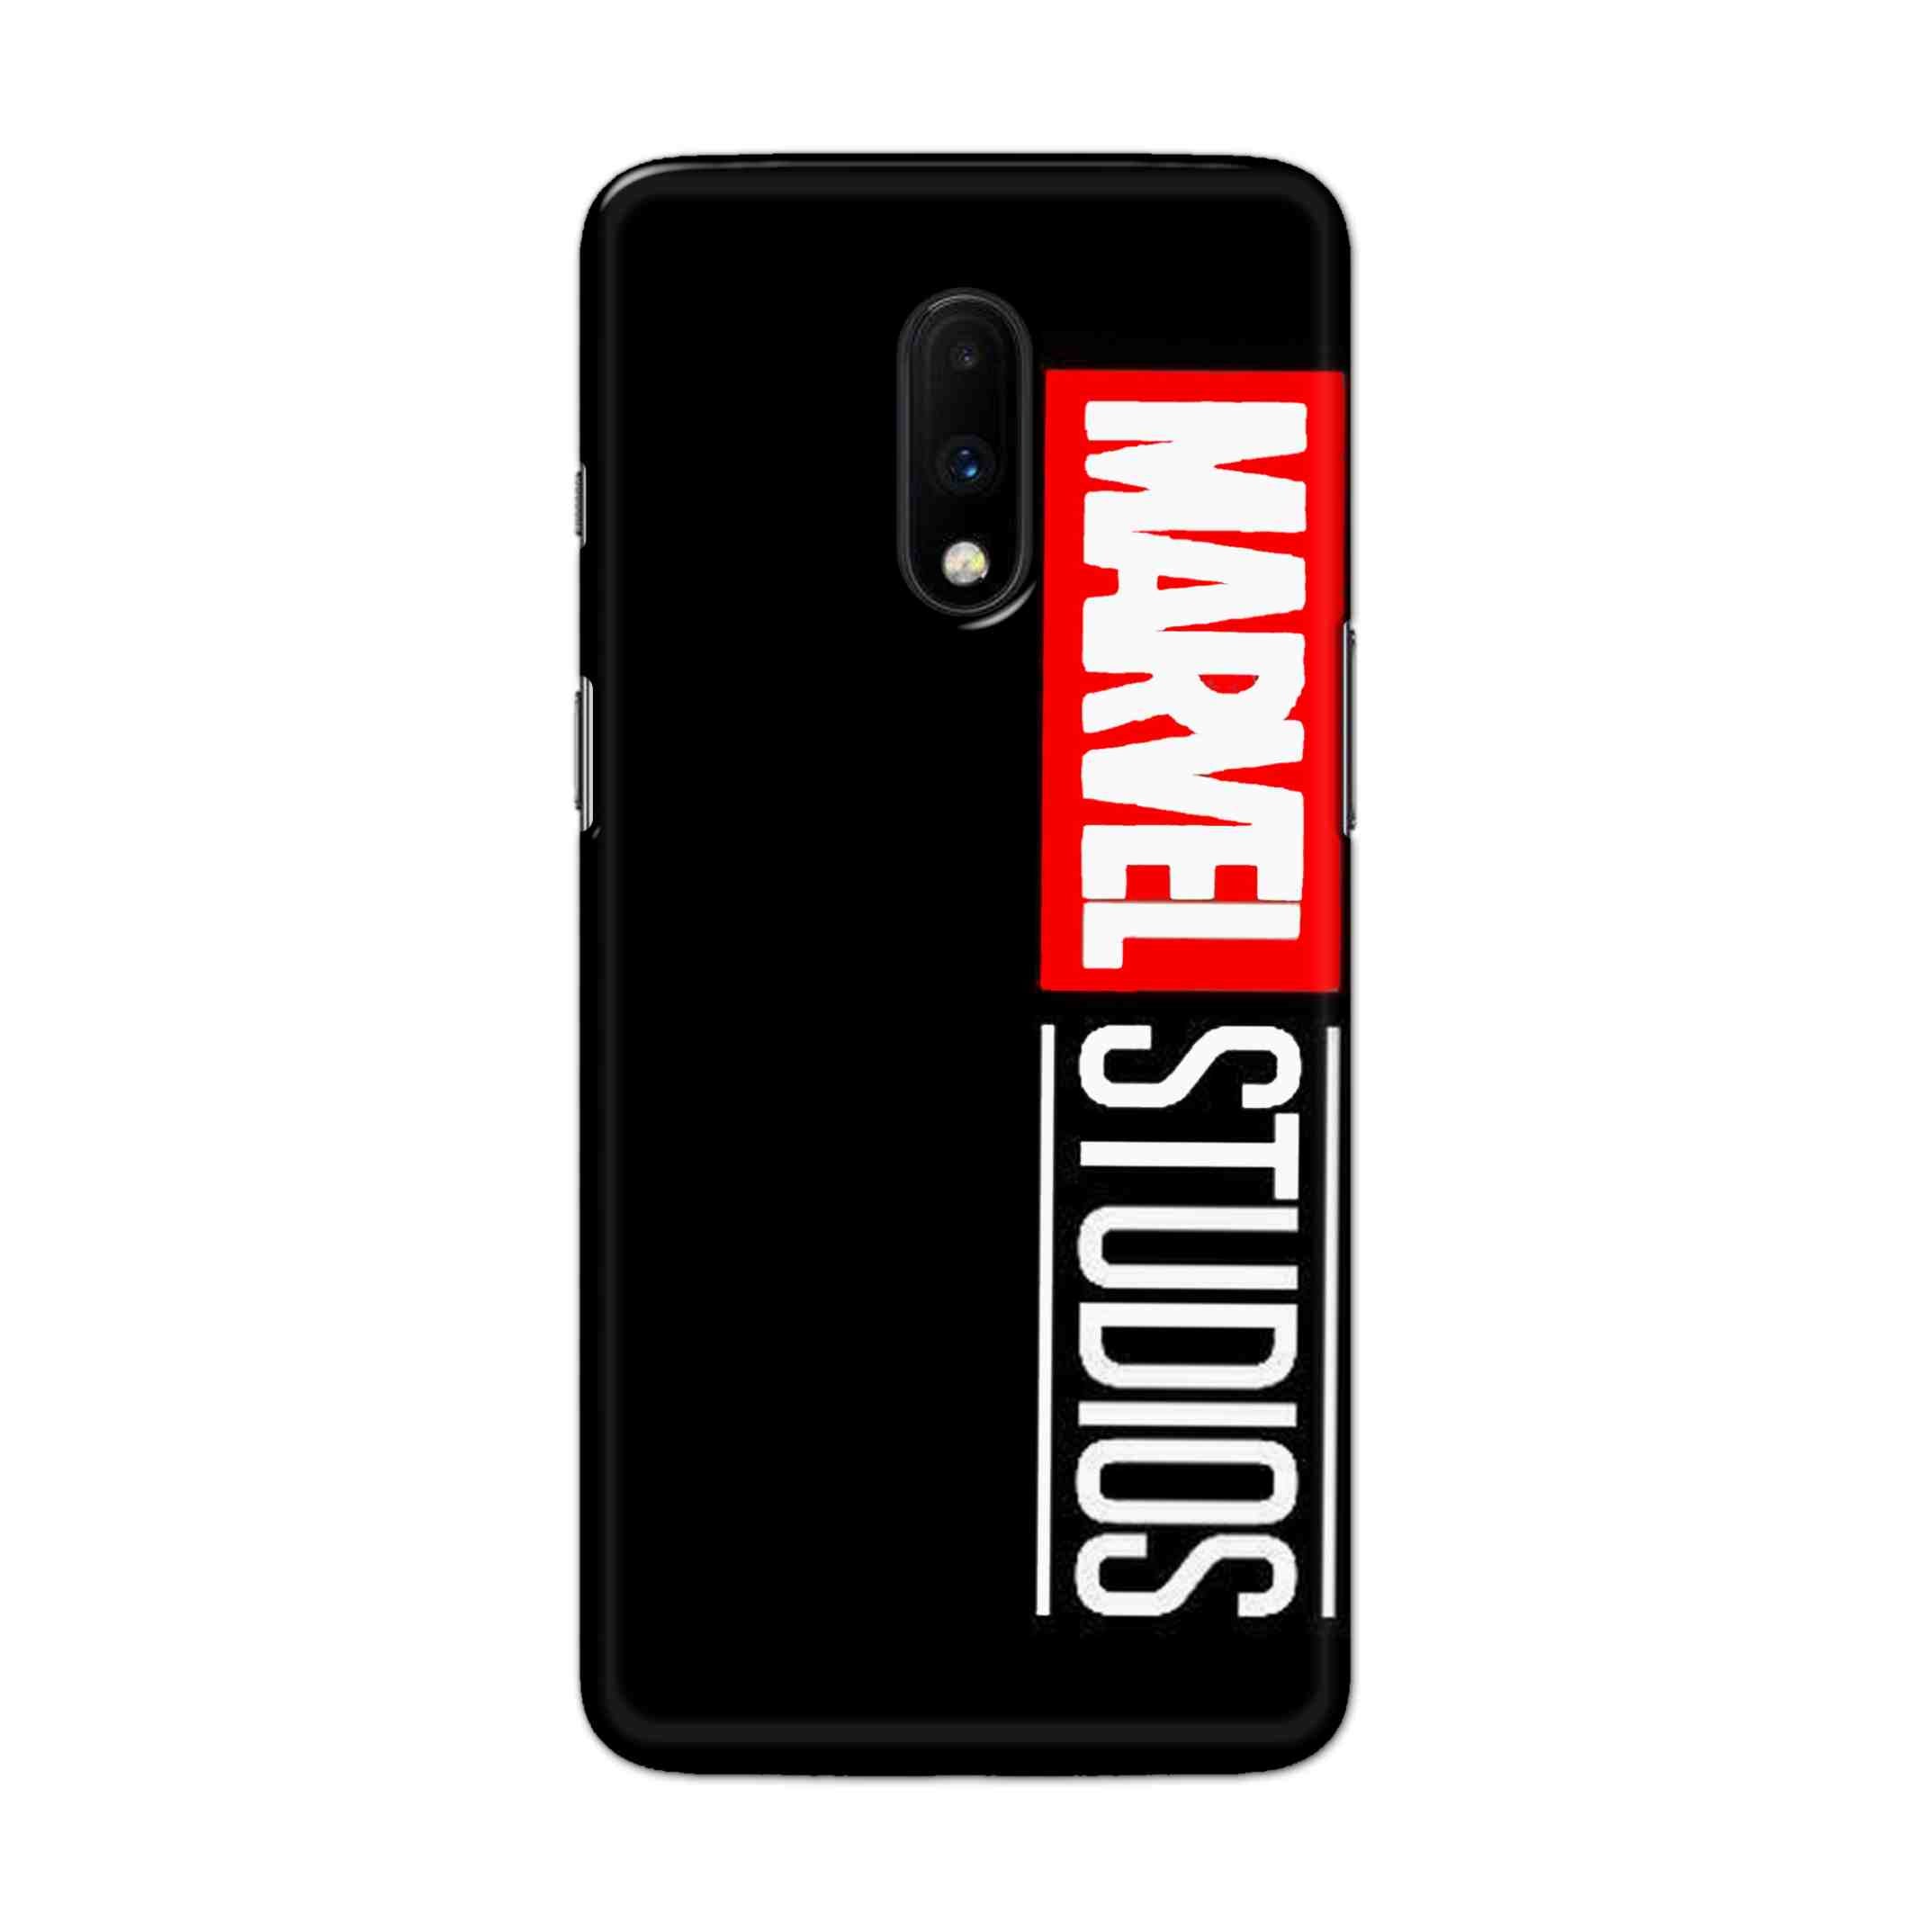 Buy Marvel Studio Hard Back Mobile Phone Case Cover For OnePlus 7 Online